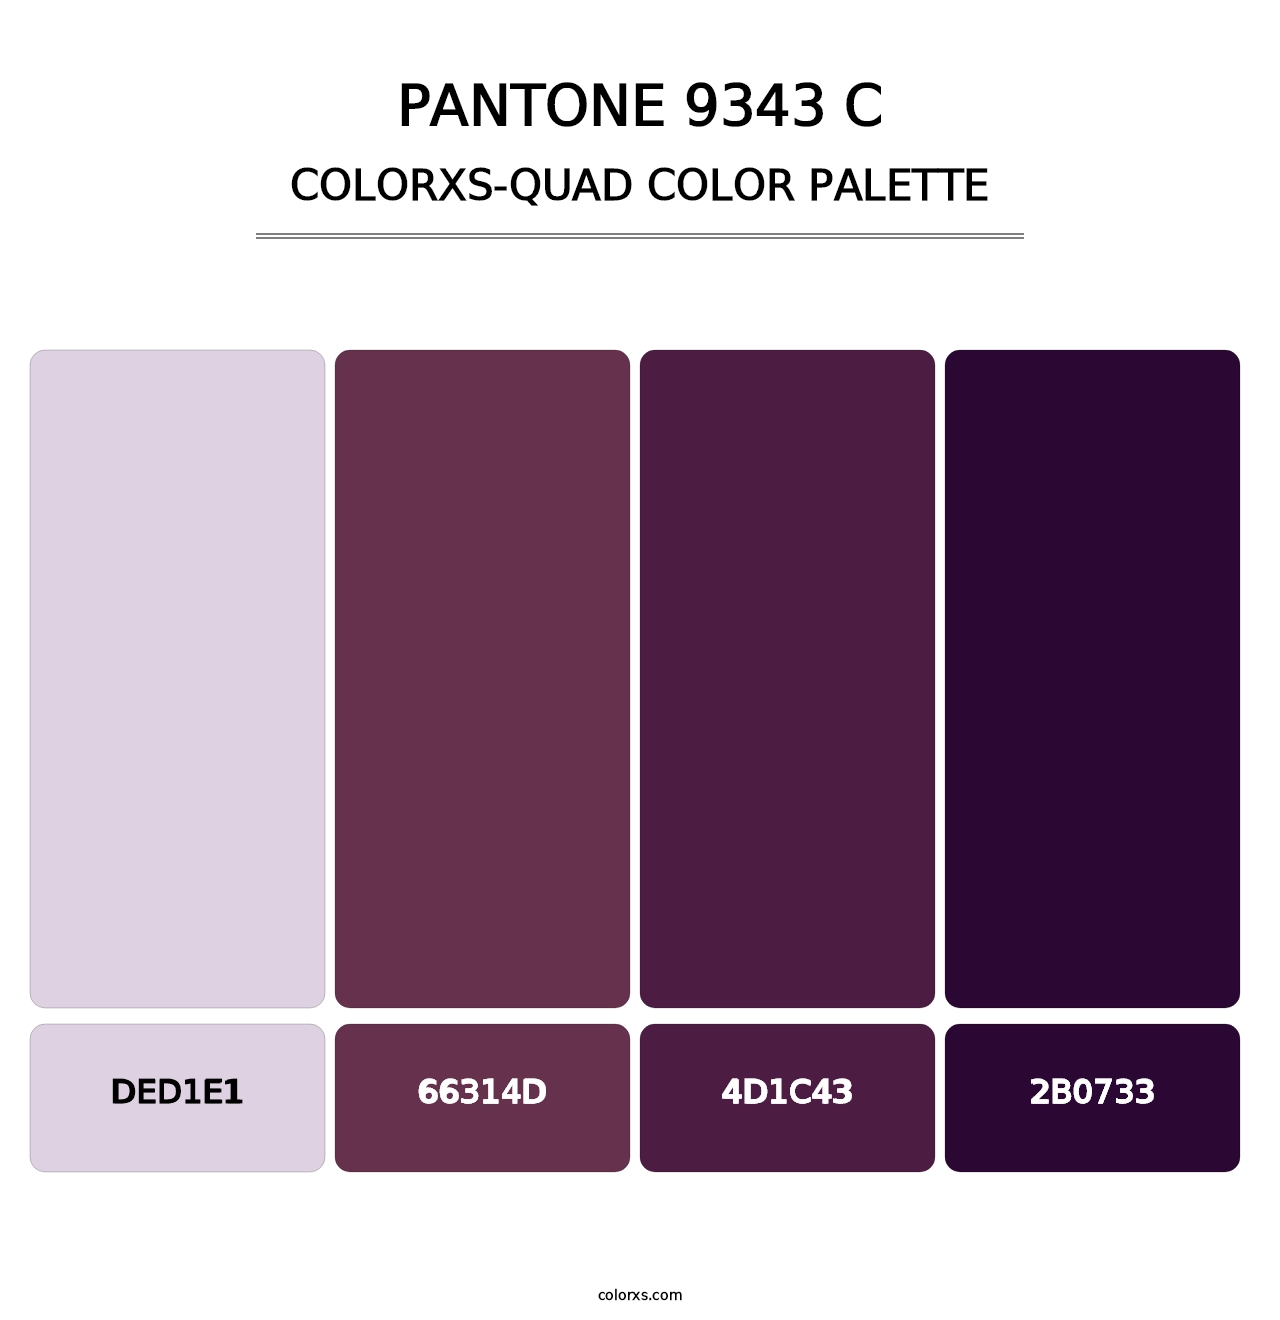 PANTONE 9343 C - Colorxs Quad Palette